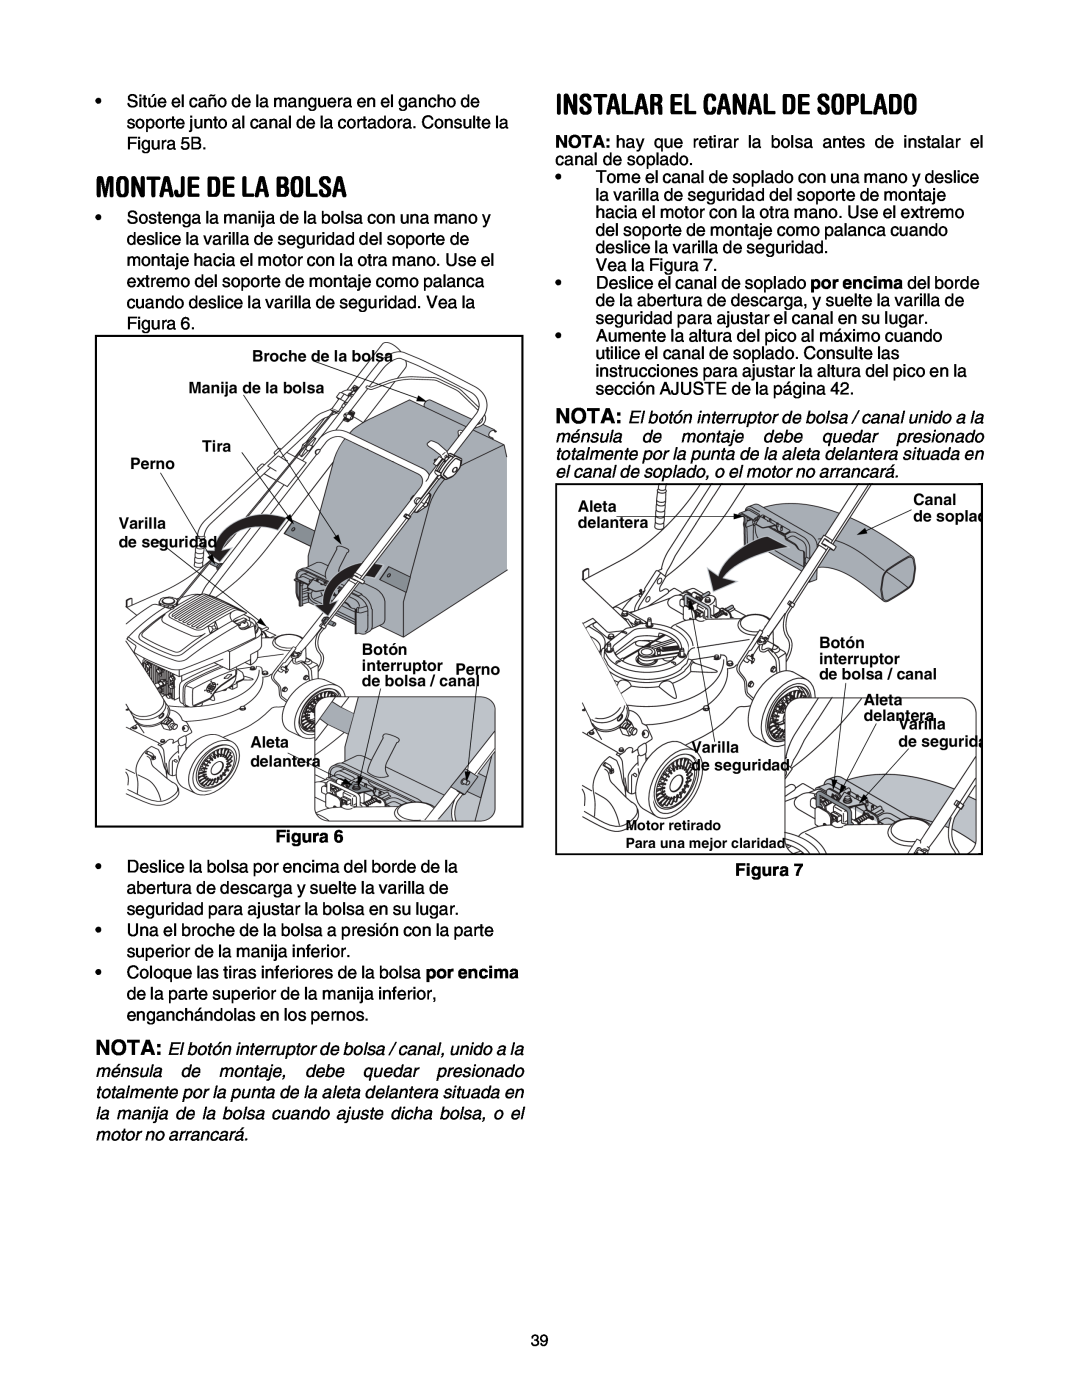 Craftsman 247.77099 operating instructions Montaje De La Bolsa, Instalar El Canal De Soplado, Figura 